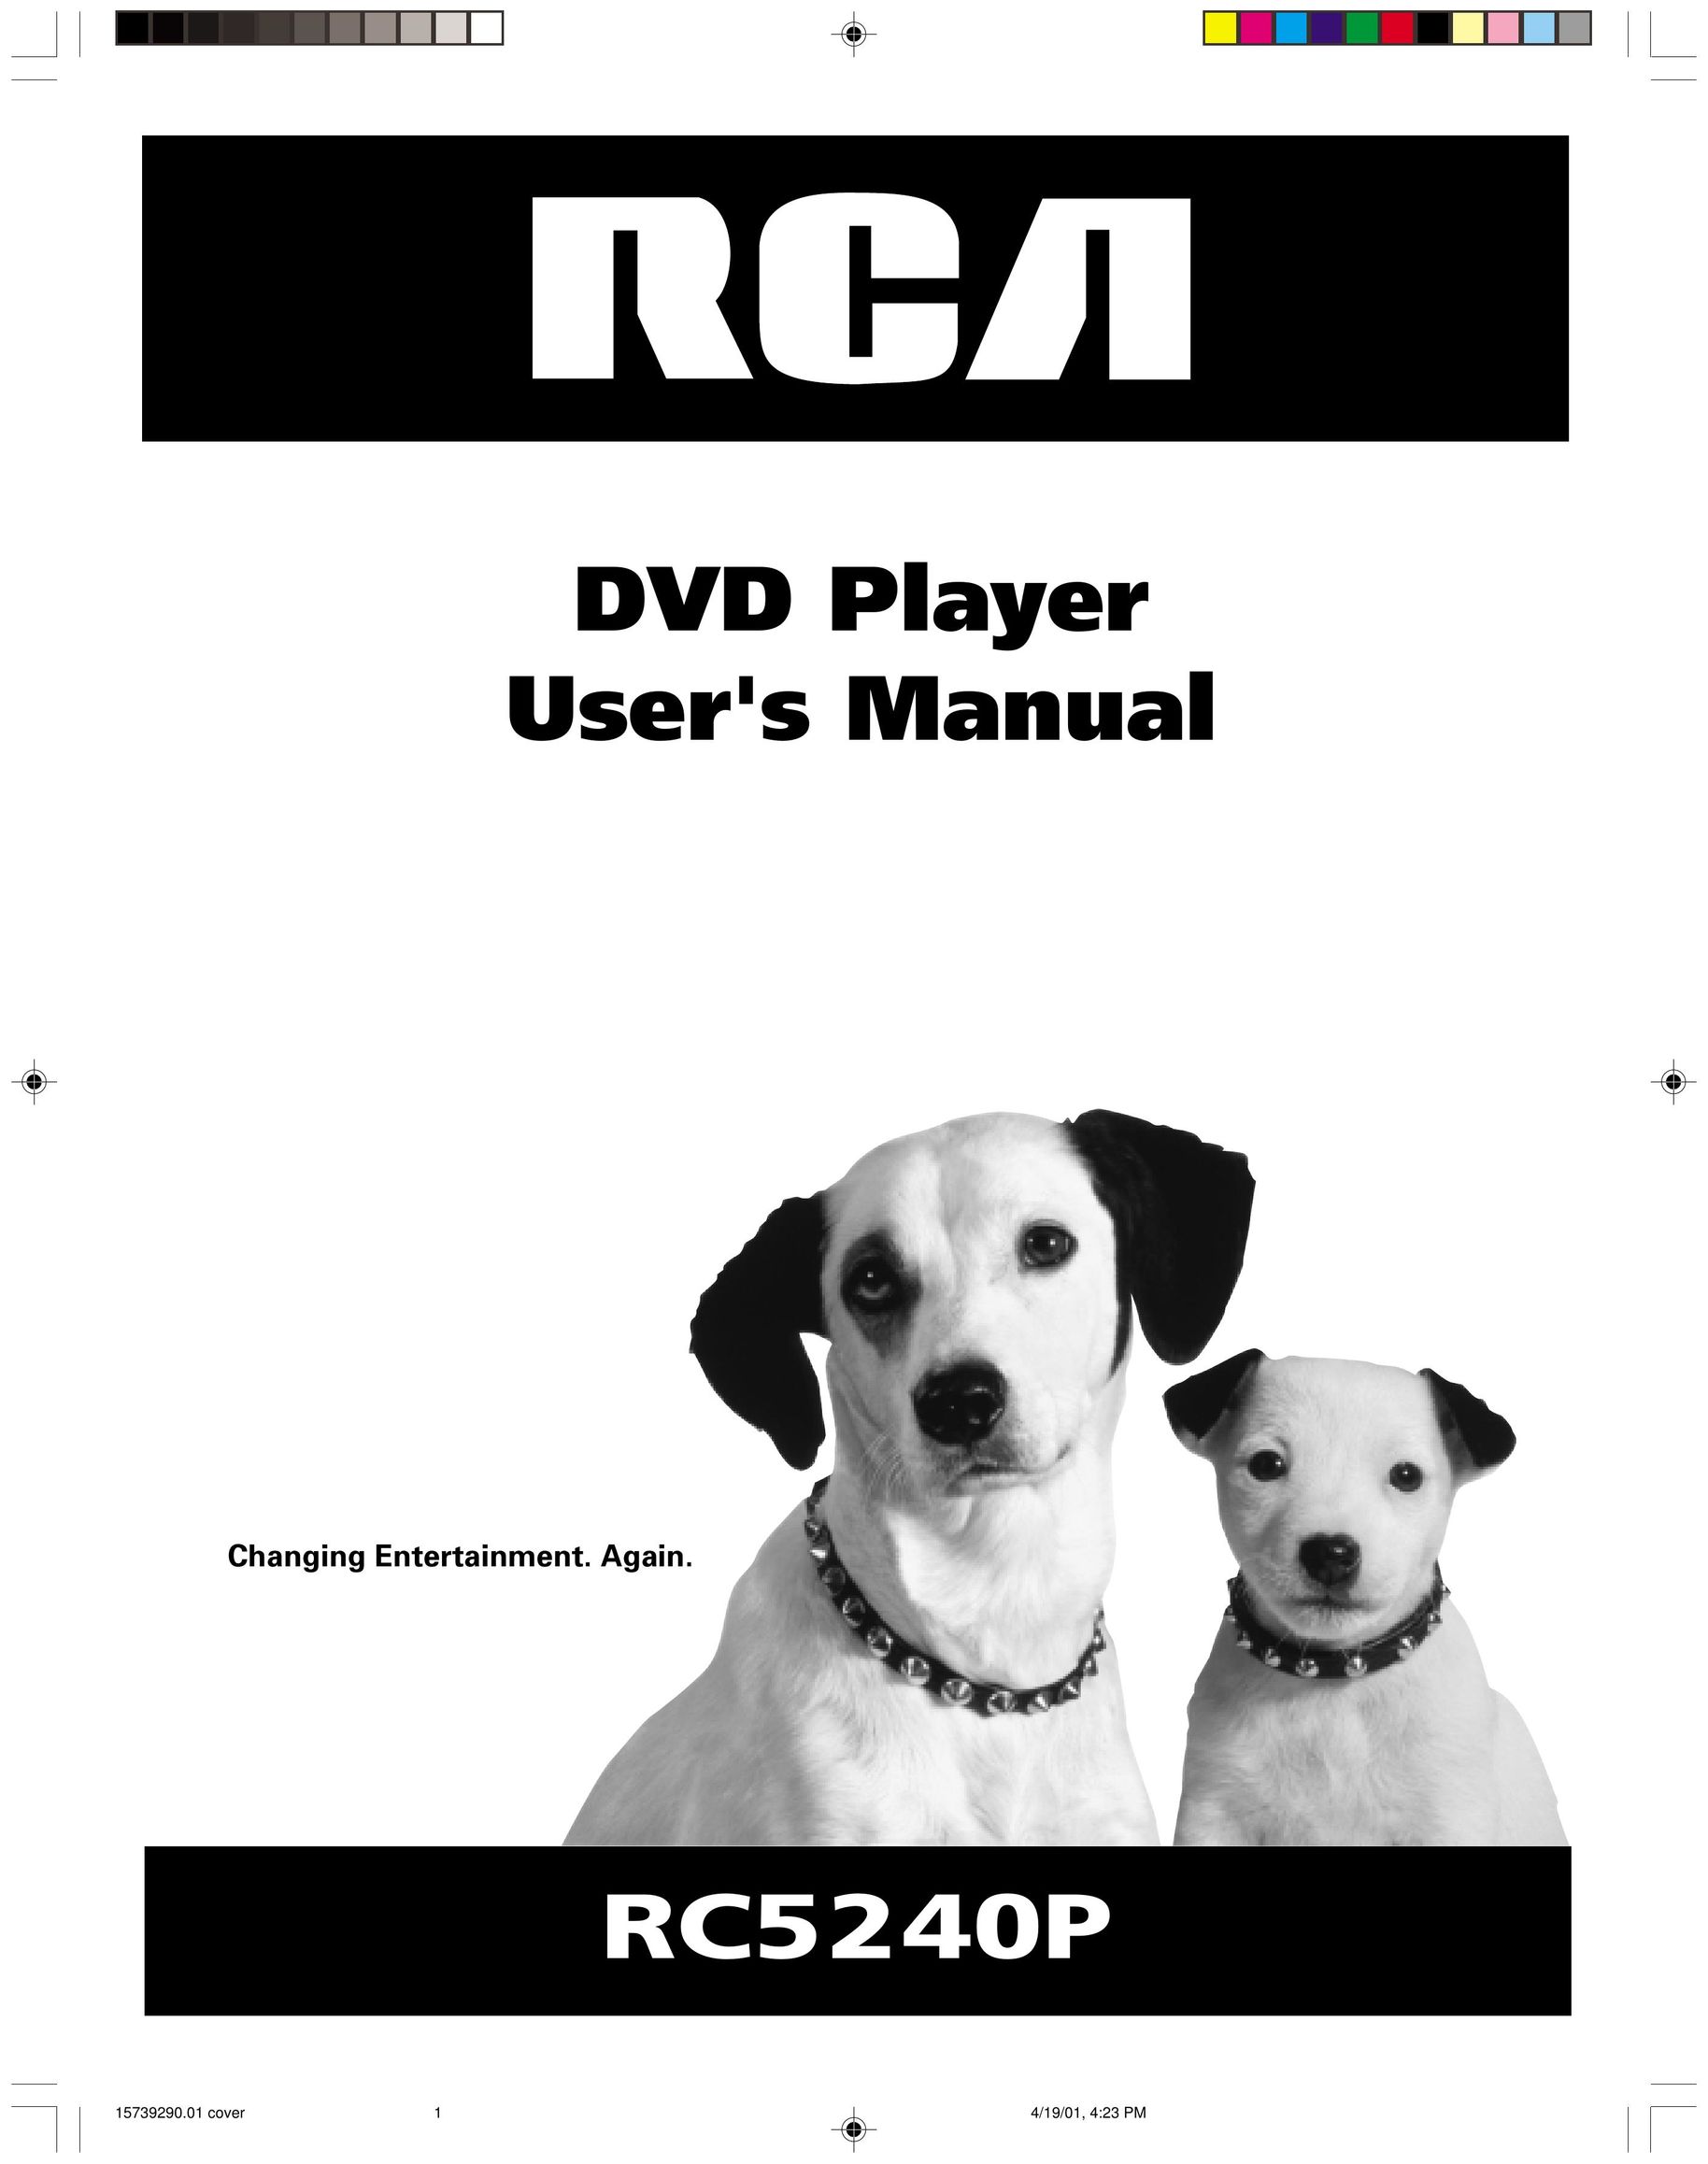 HP (Hewlett-Packard) RC5240P DVD Player User Manual